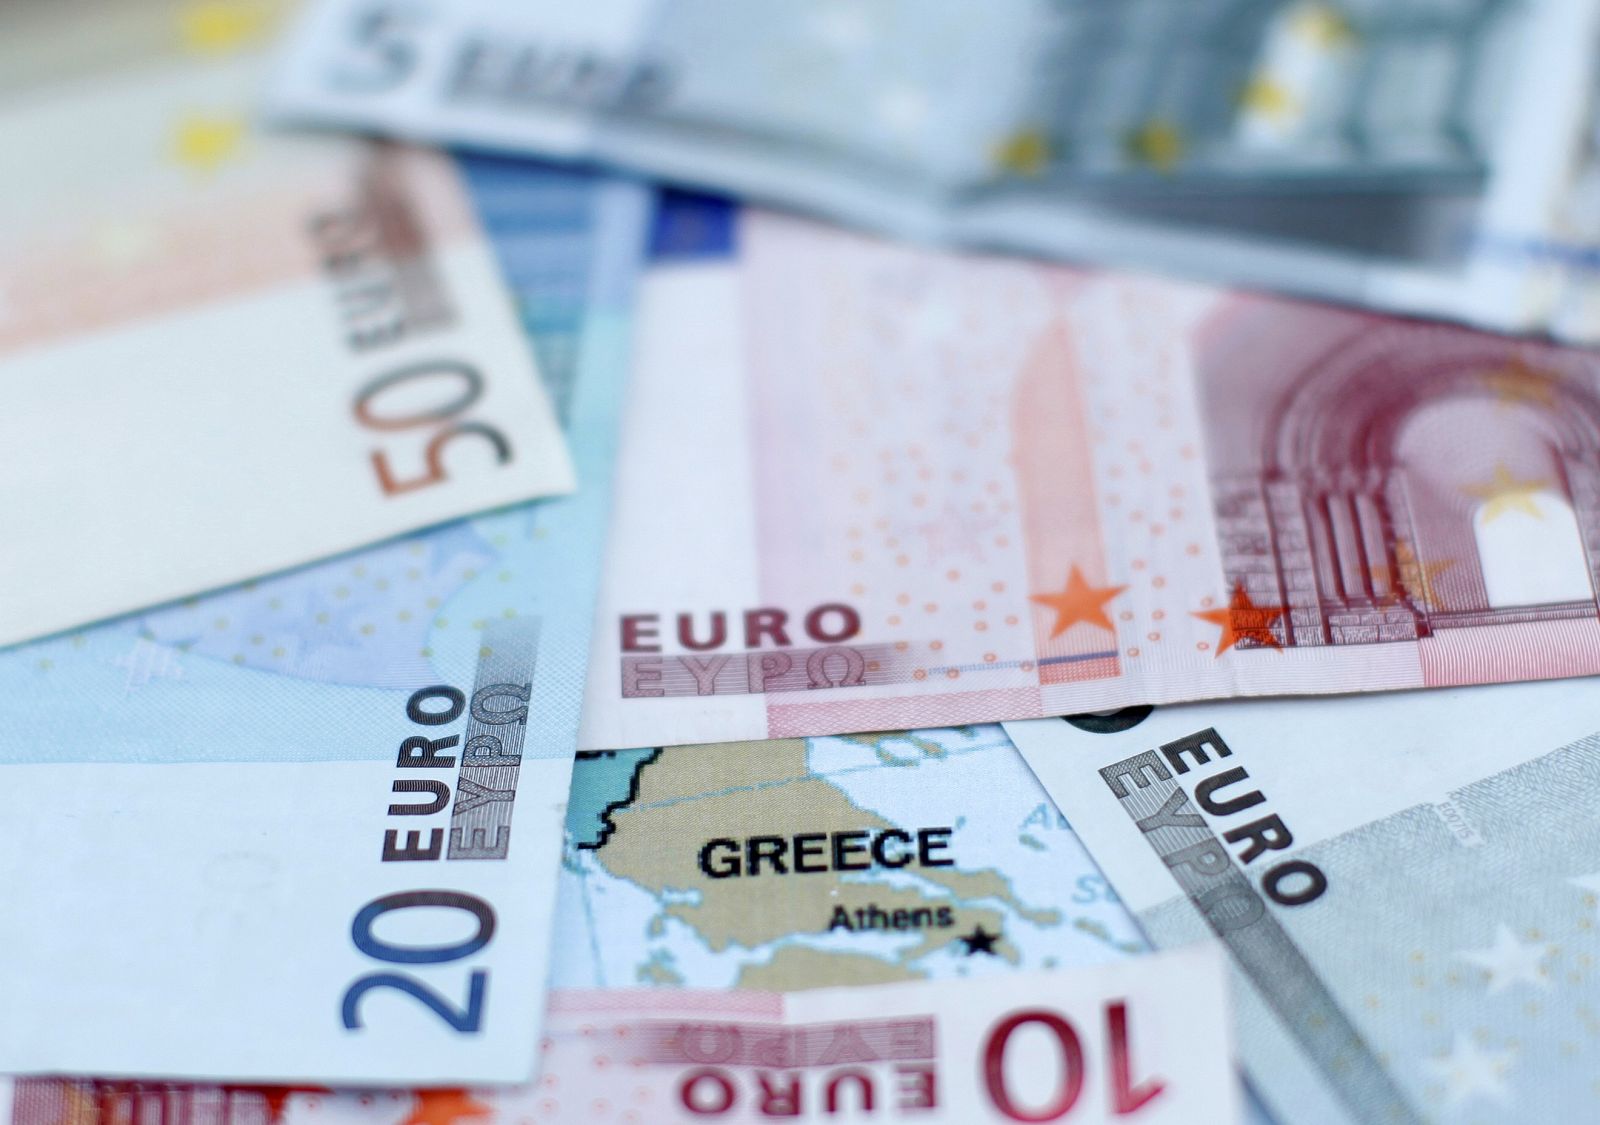 Grecia, el centro y origen de la crisis de deuda de la zona euro